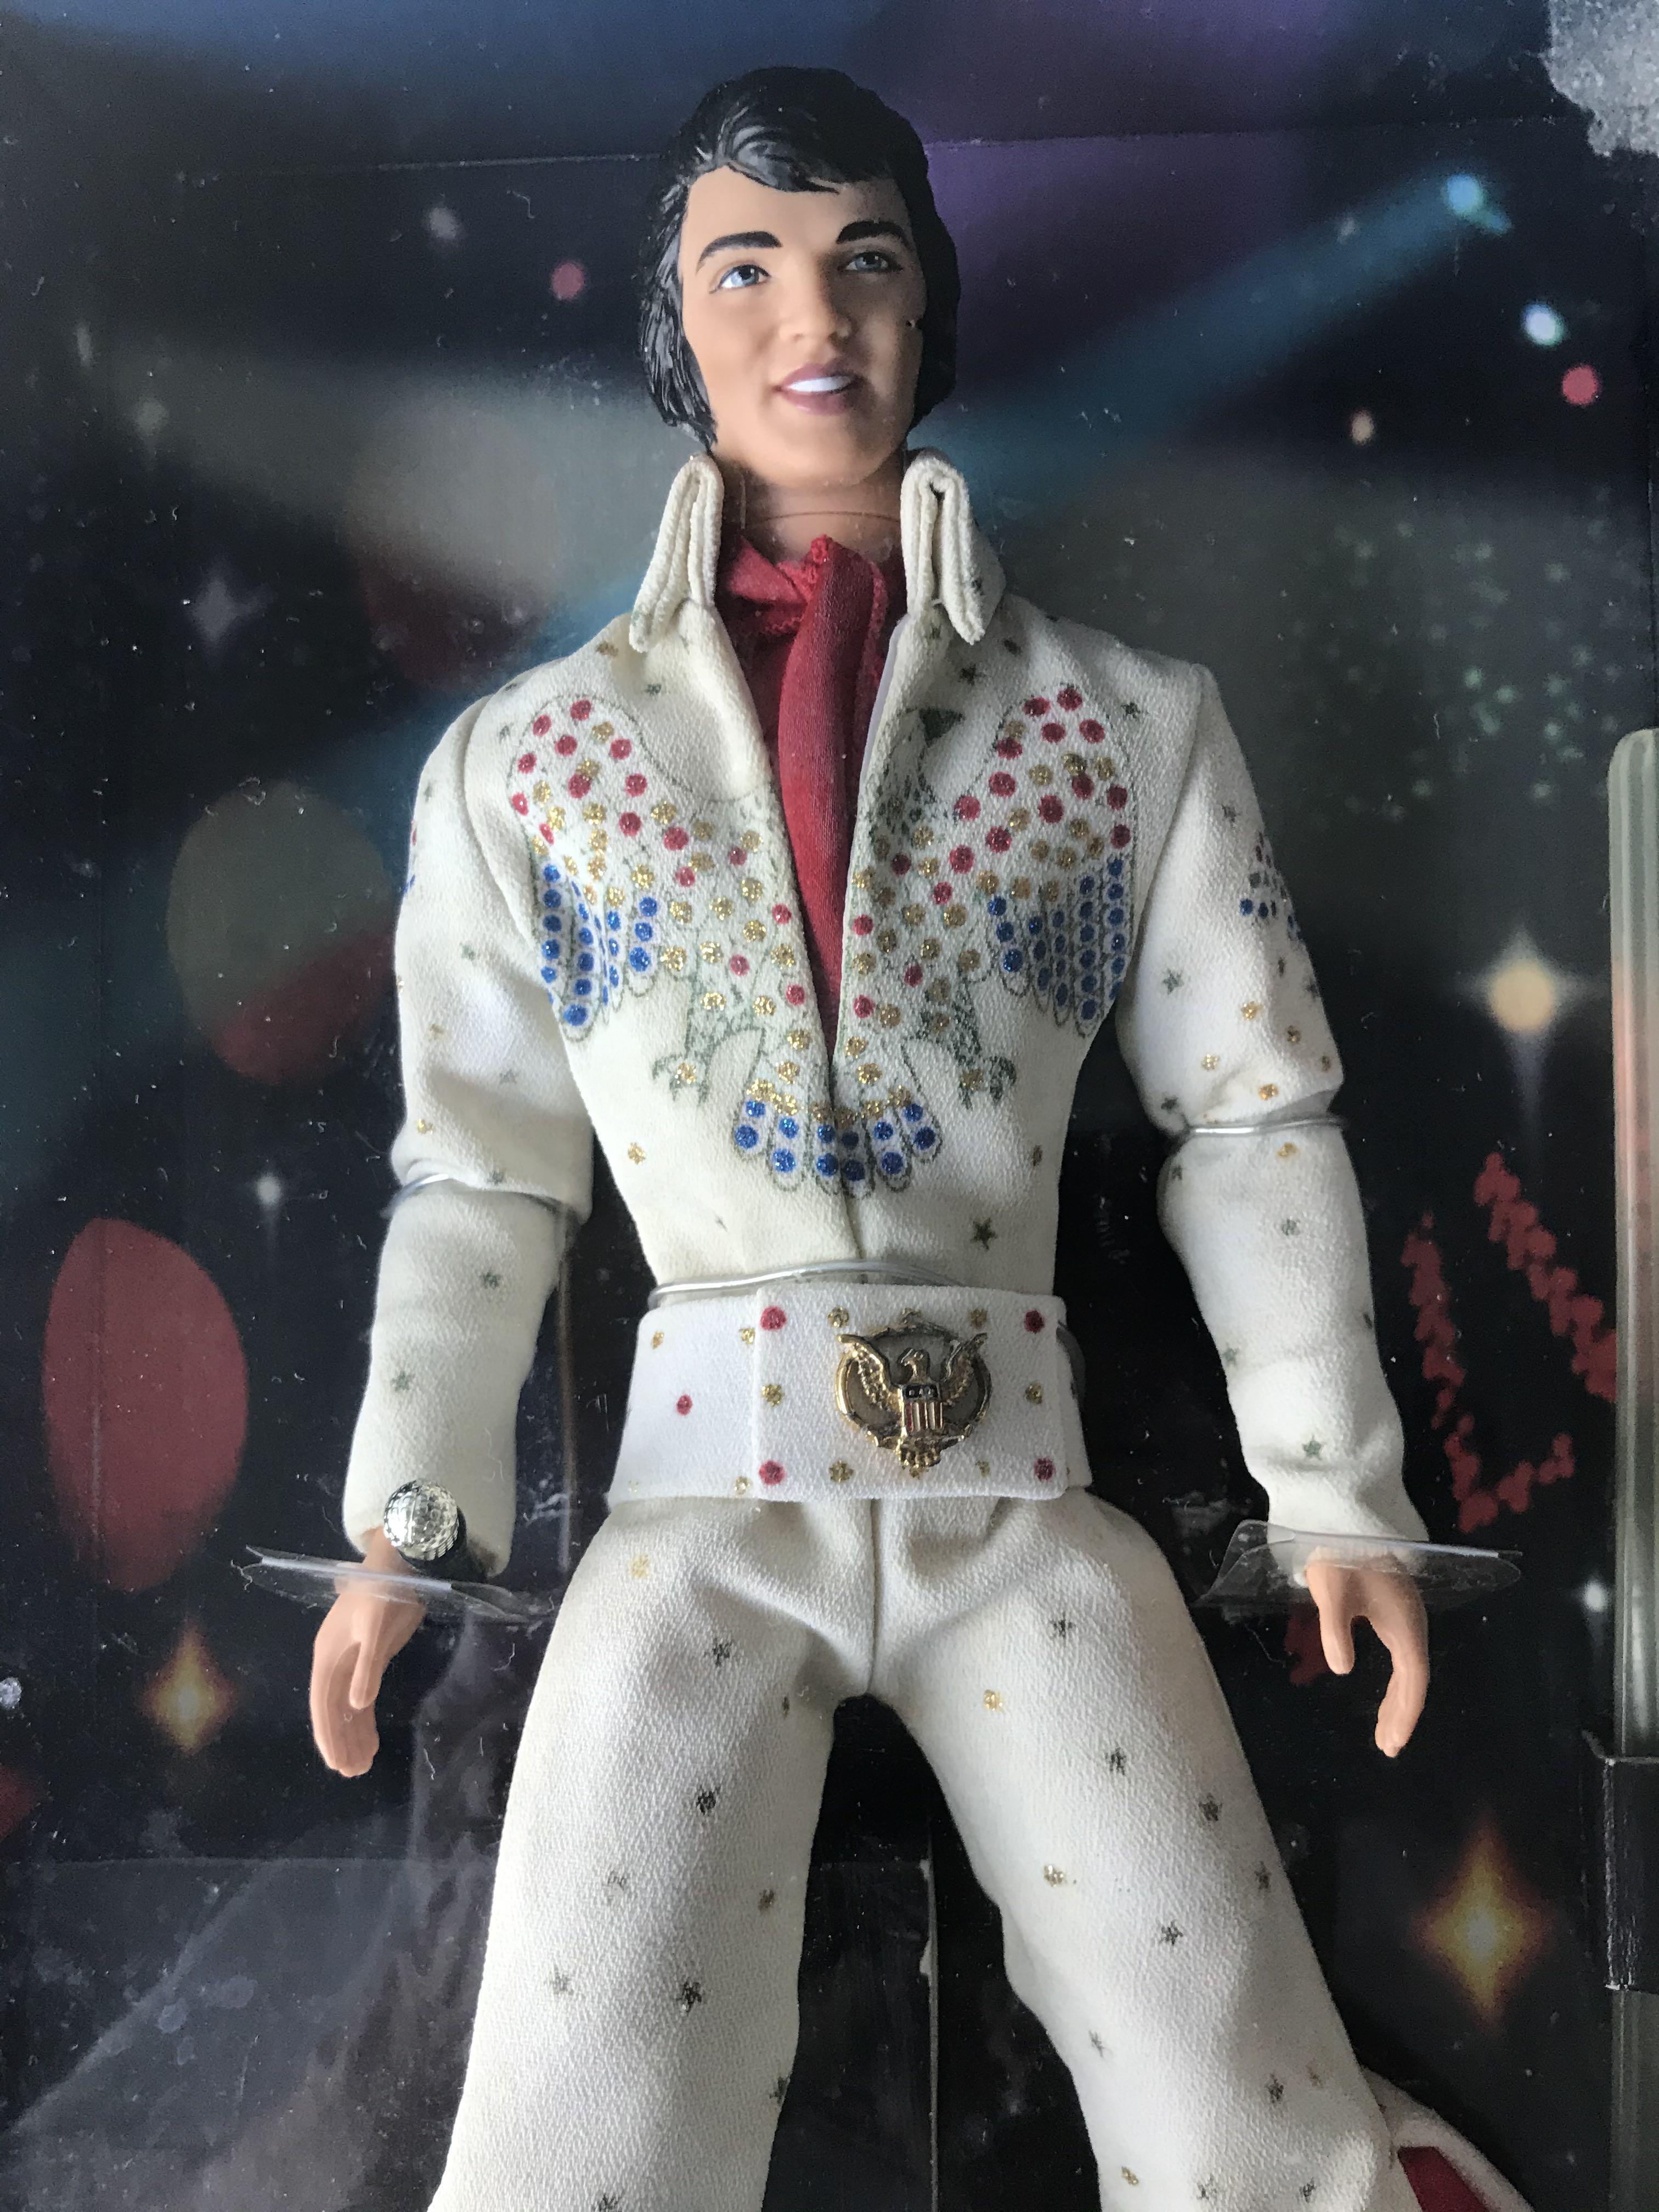 Millimeter Gemaakt van Voorbeeld Authentic Barbie Ken as Elvis Presley Limited Edition, Hobbies & Toys, Toys  & Games on Carousell